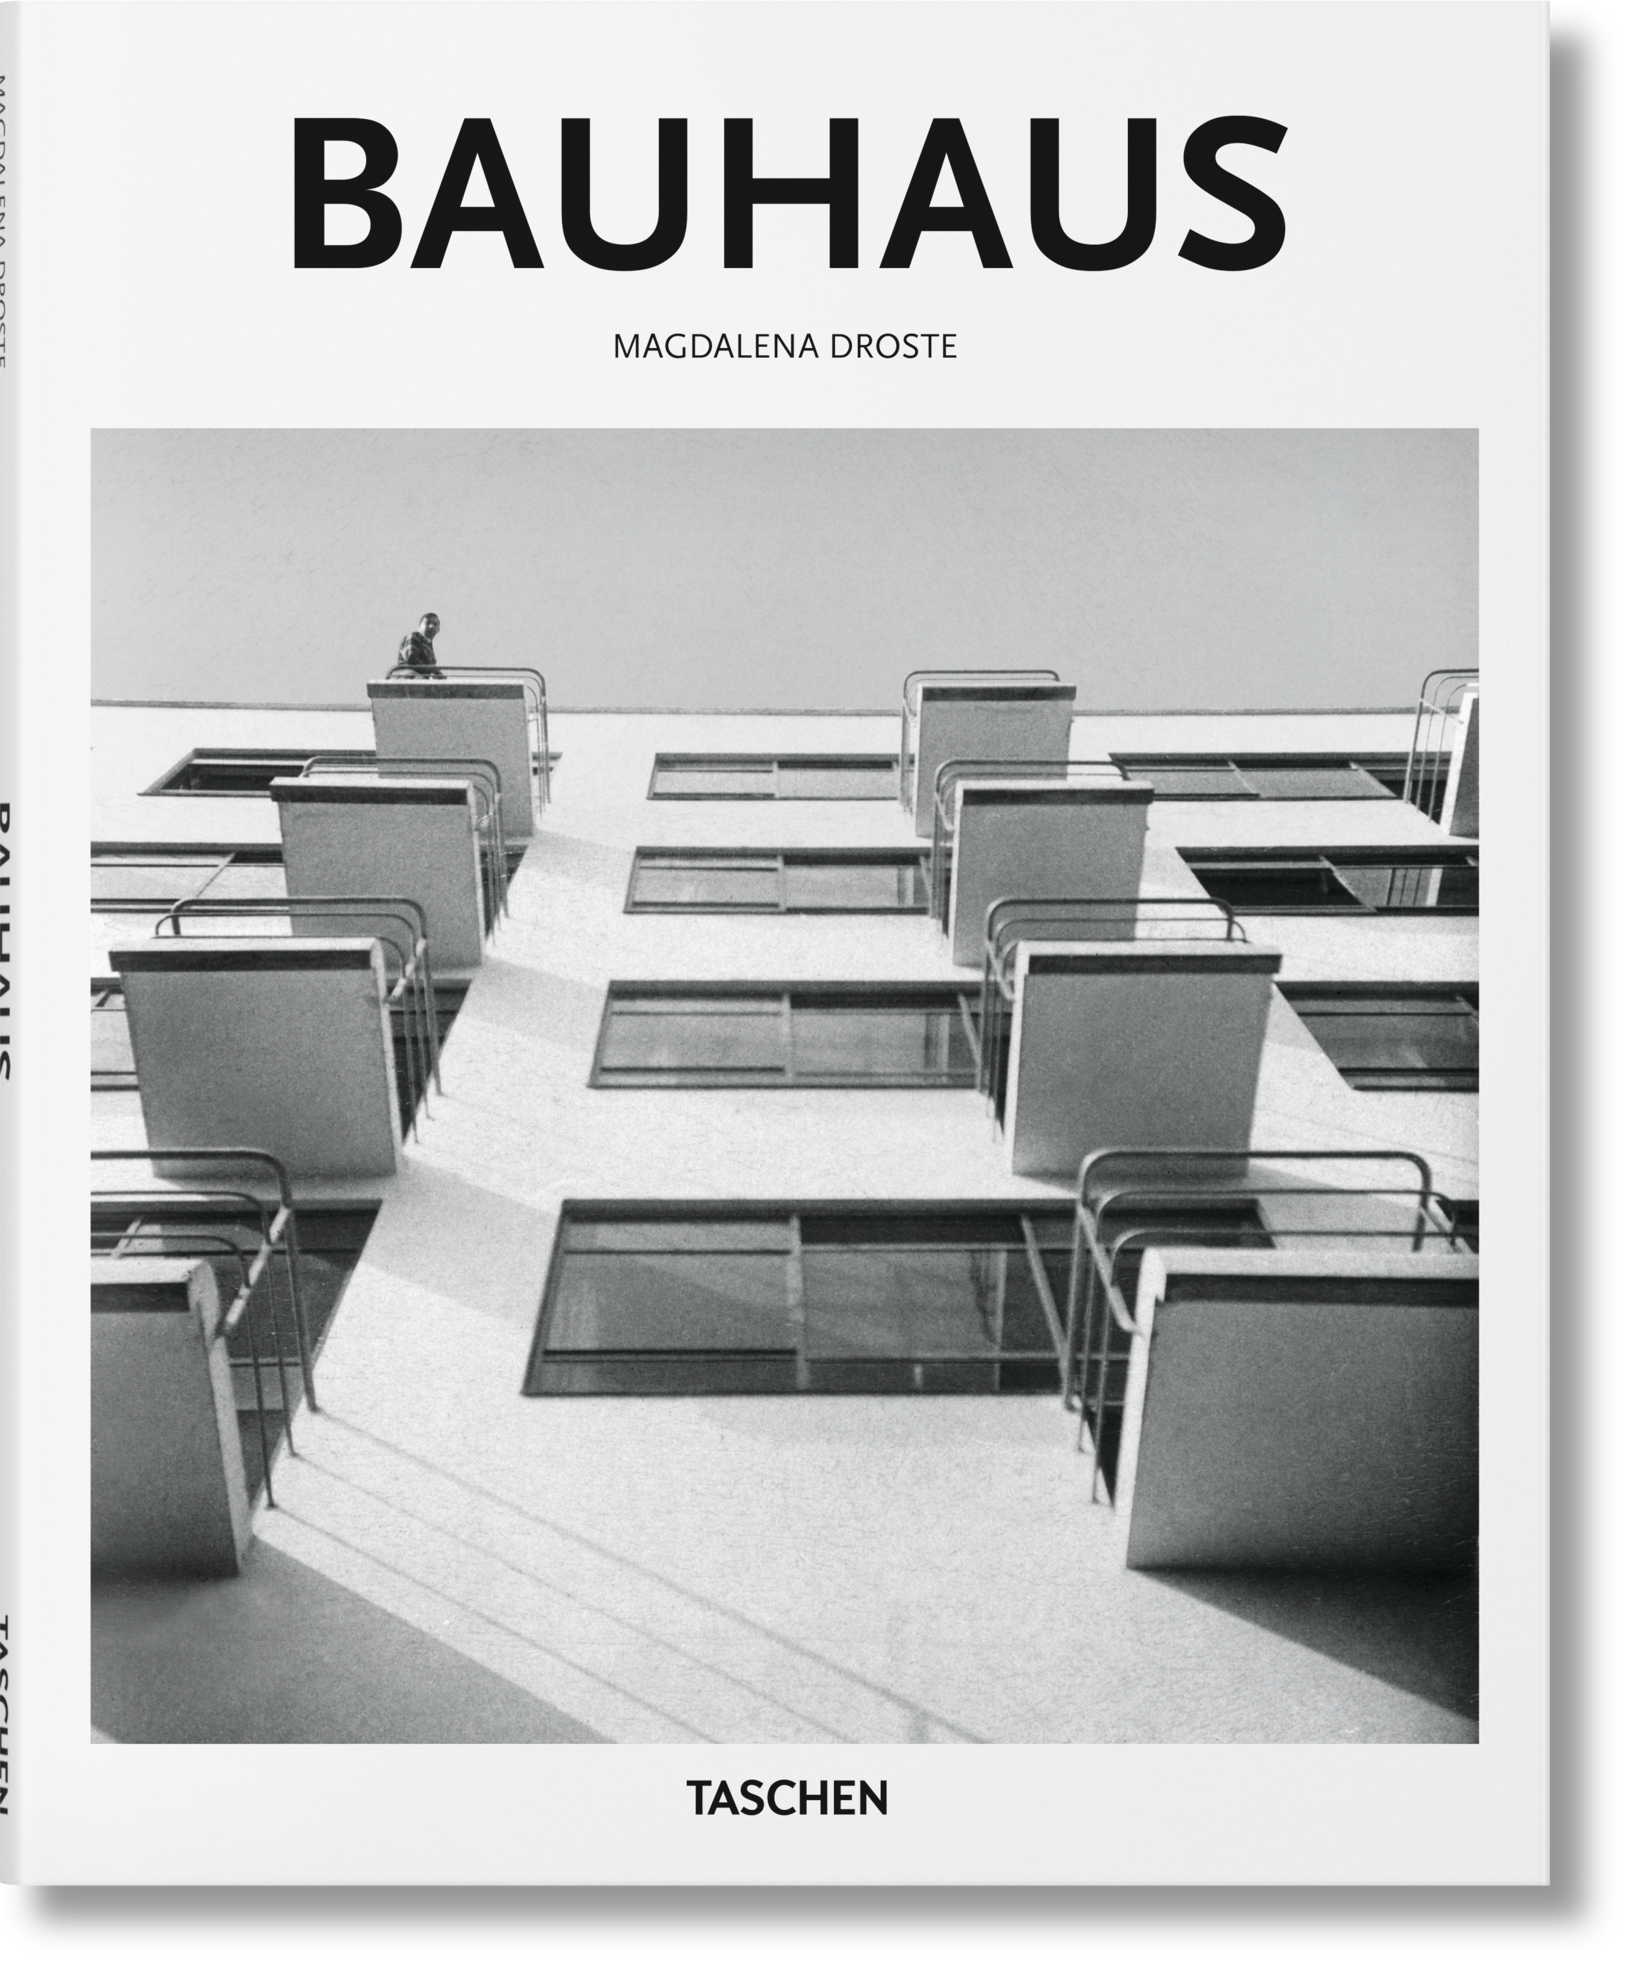 TASCHEN Books: The total work of art. Bauhaus.